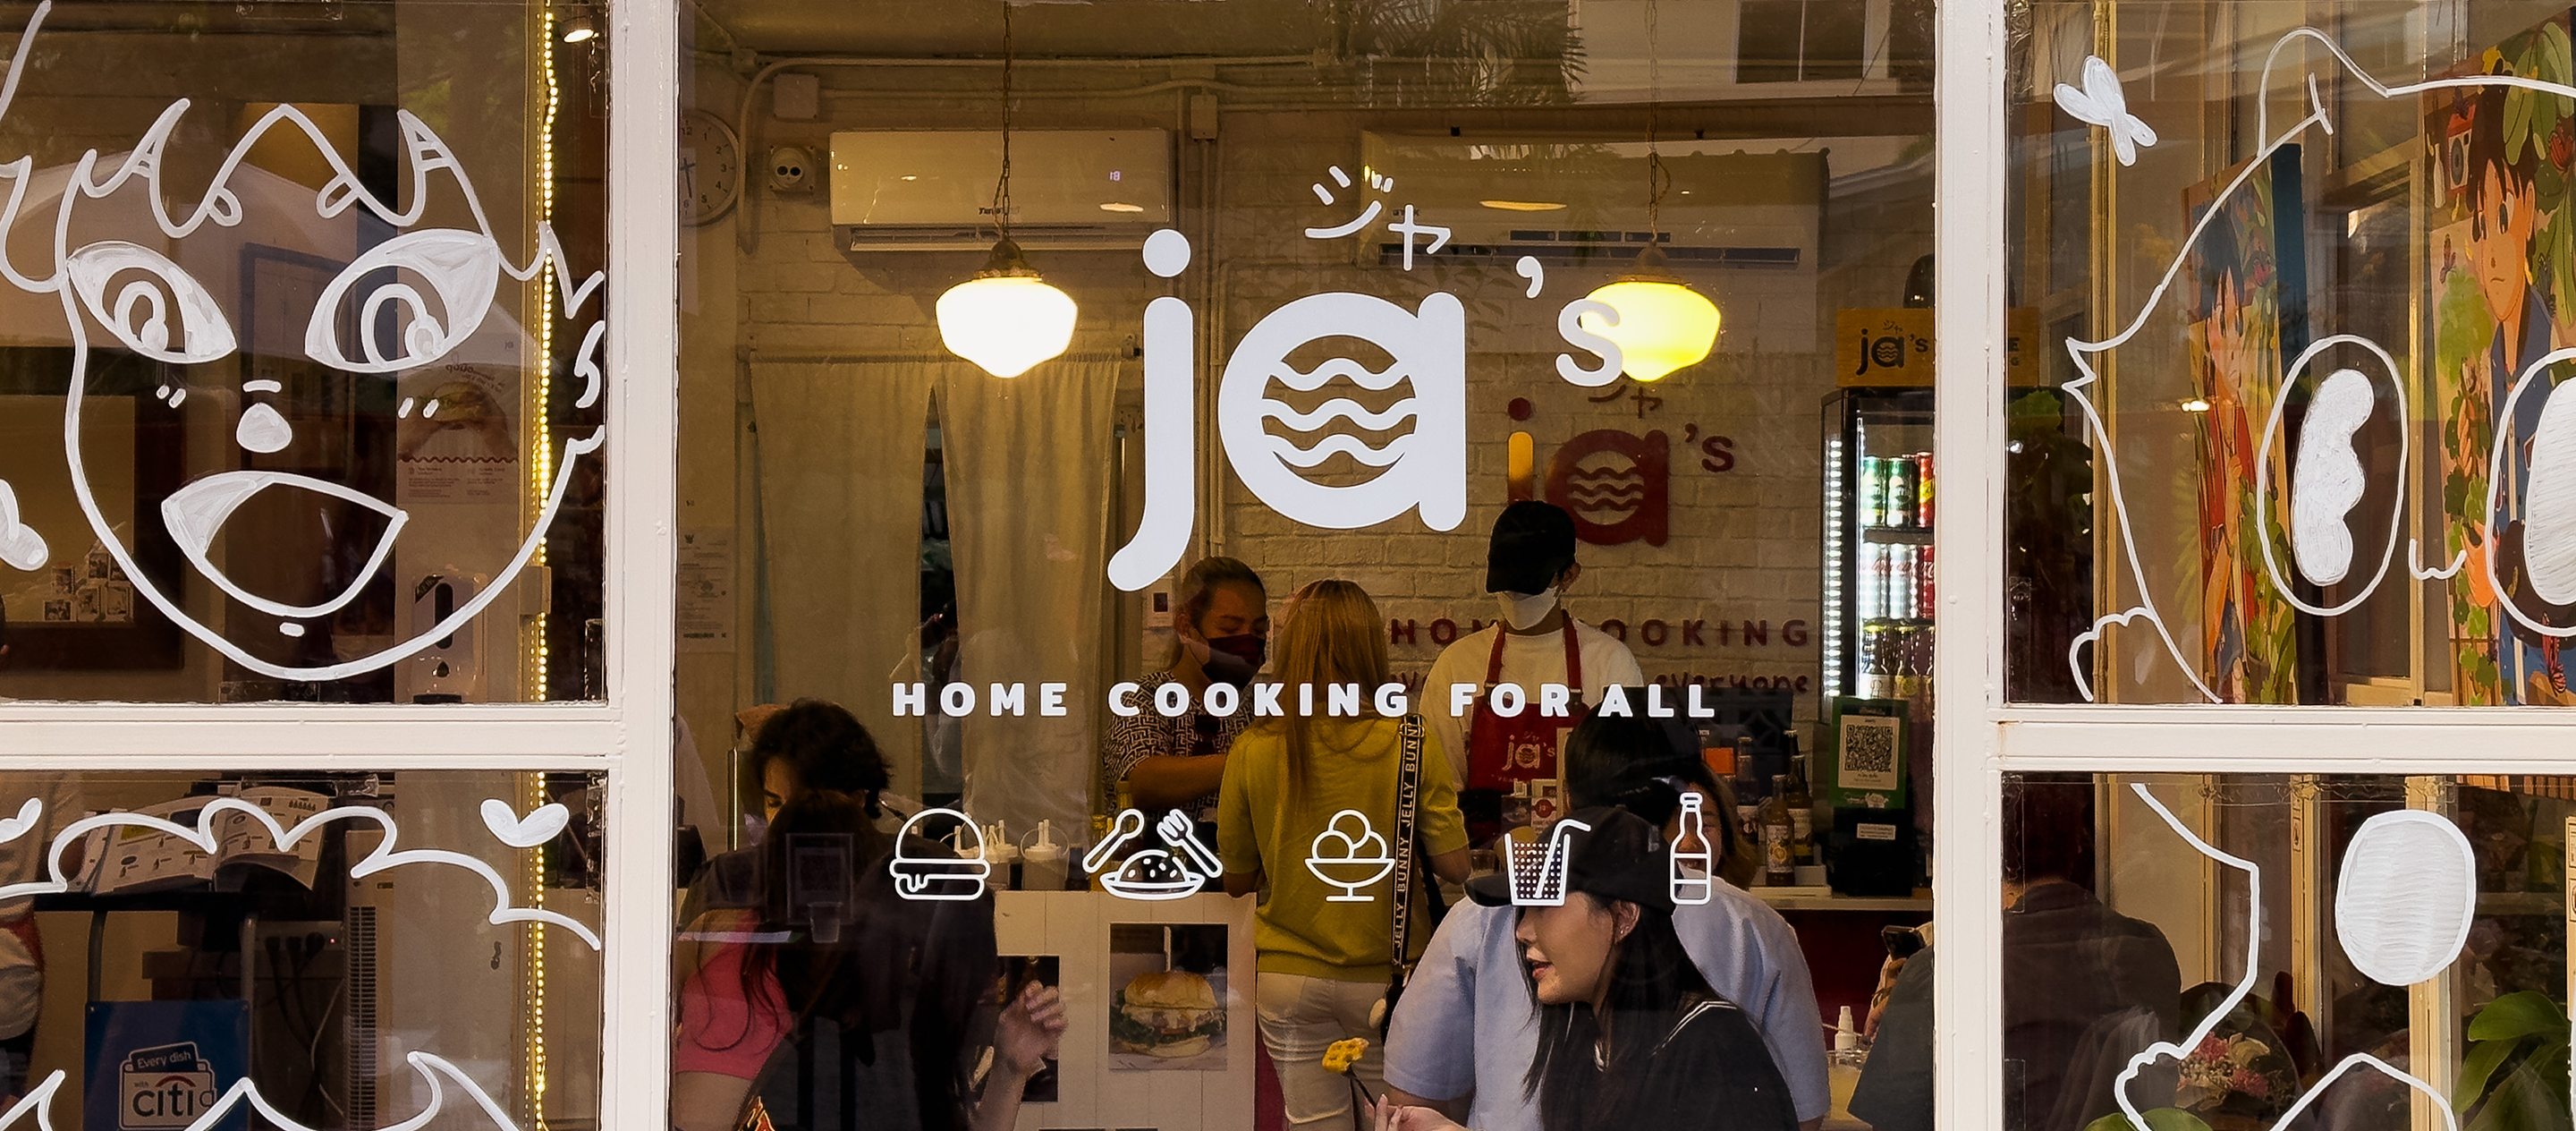 JA’S Home Cooking เสพศิลป์ กินเบอร์เกอร์ คอมมูนิตี้แห่งใหม่ที่มาได้ทุกวัน